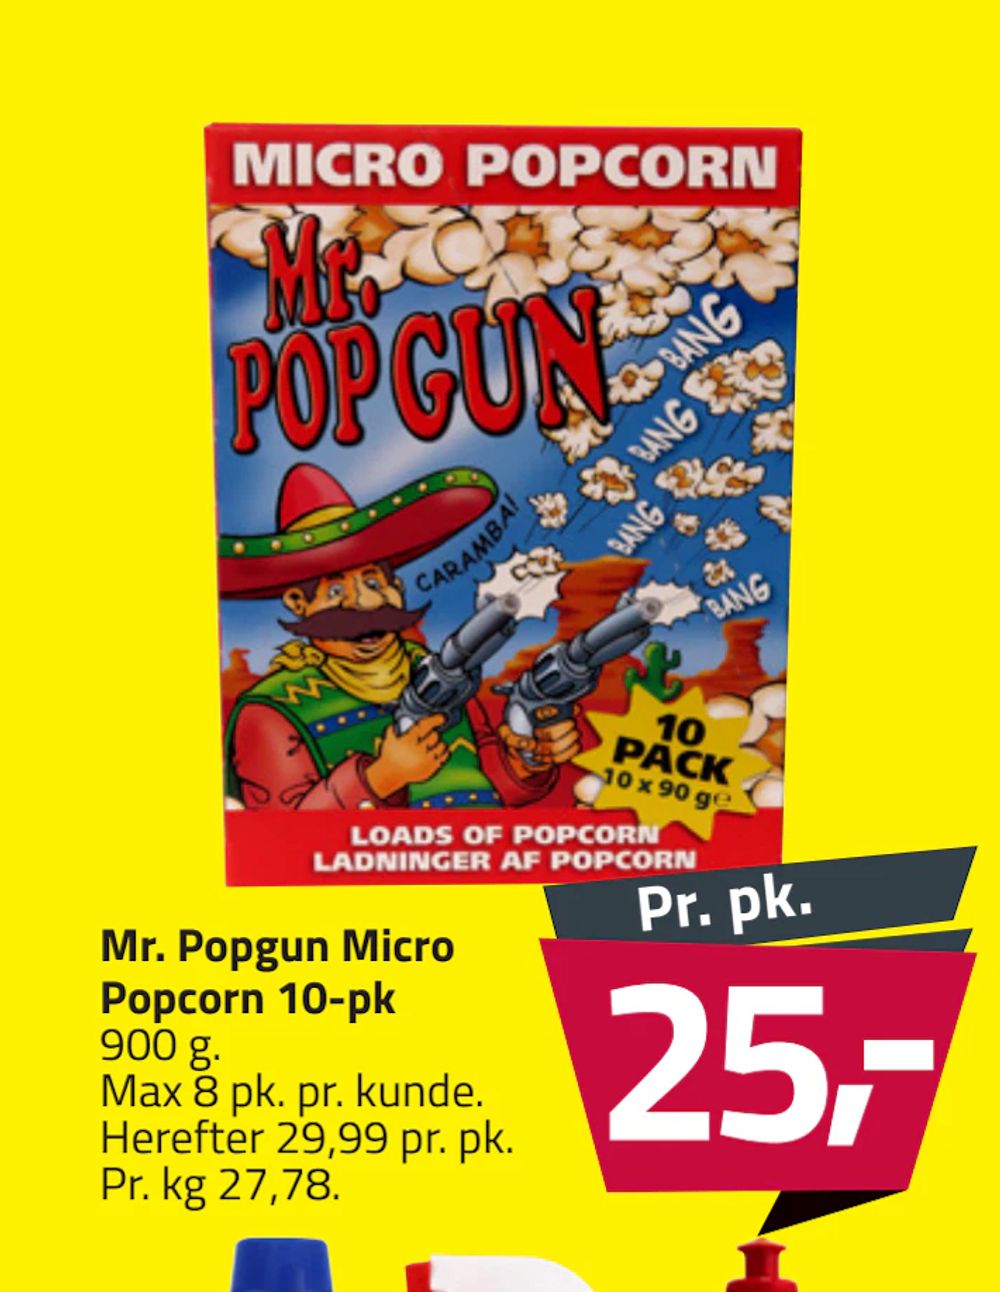 Tilbud på Mr. Popgun Micro Popcorn 10-pk fra Fleggaard til 25 kr.